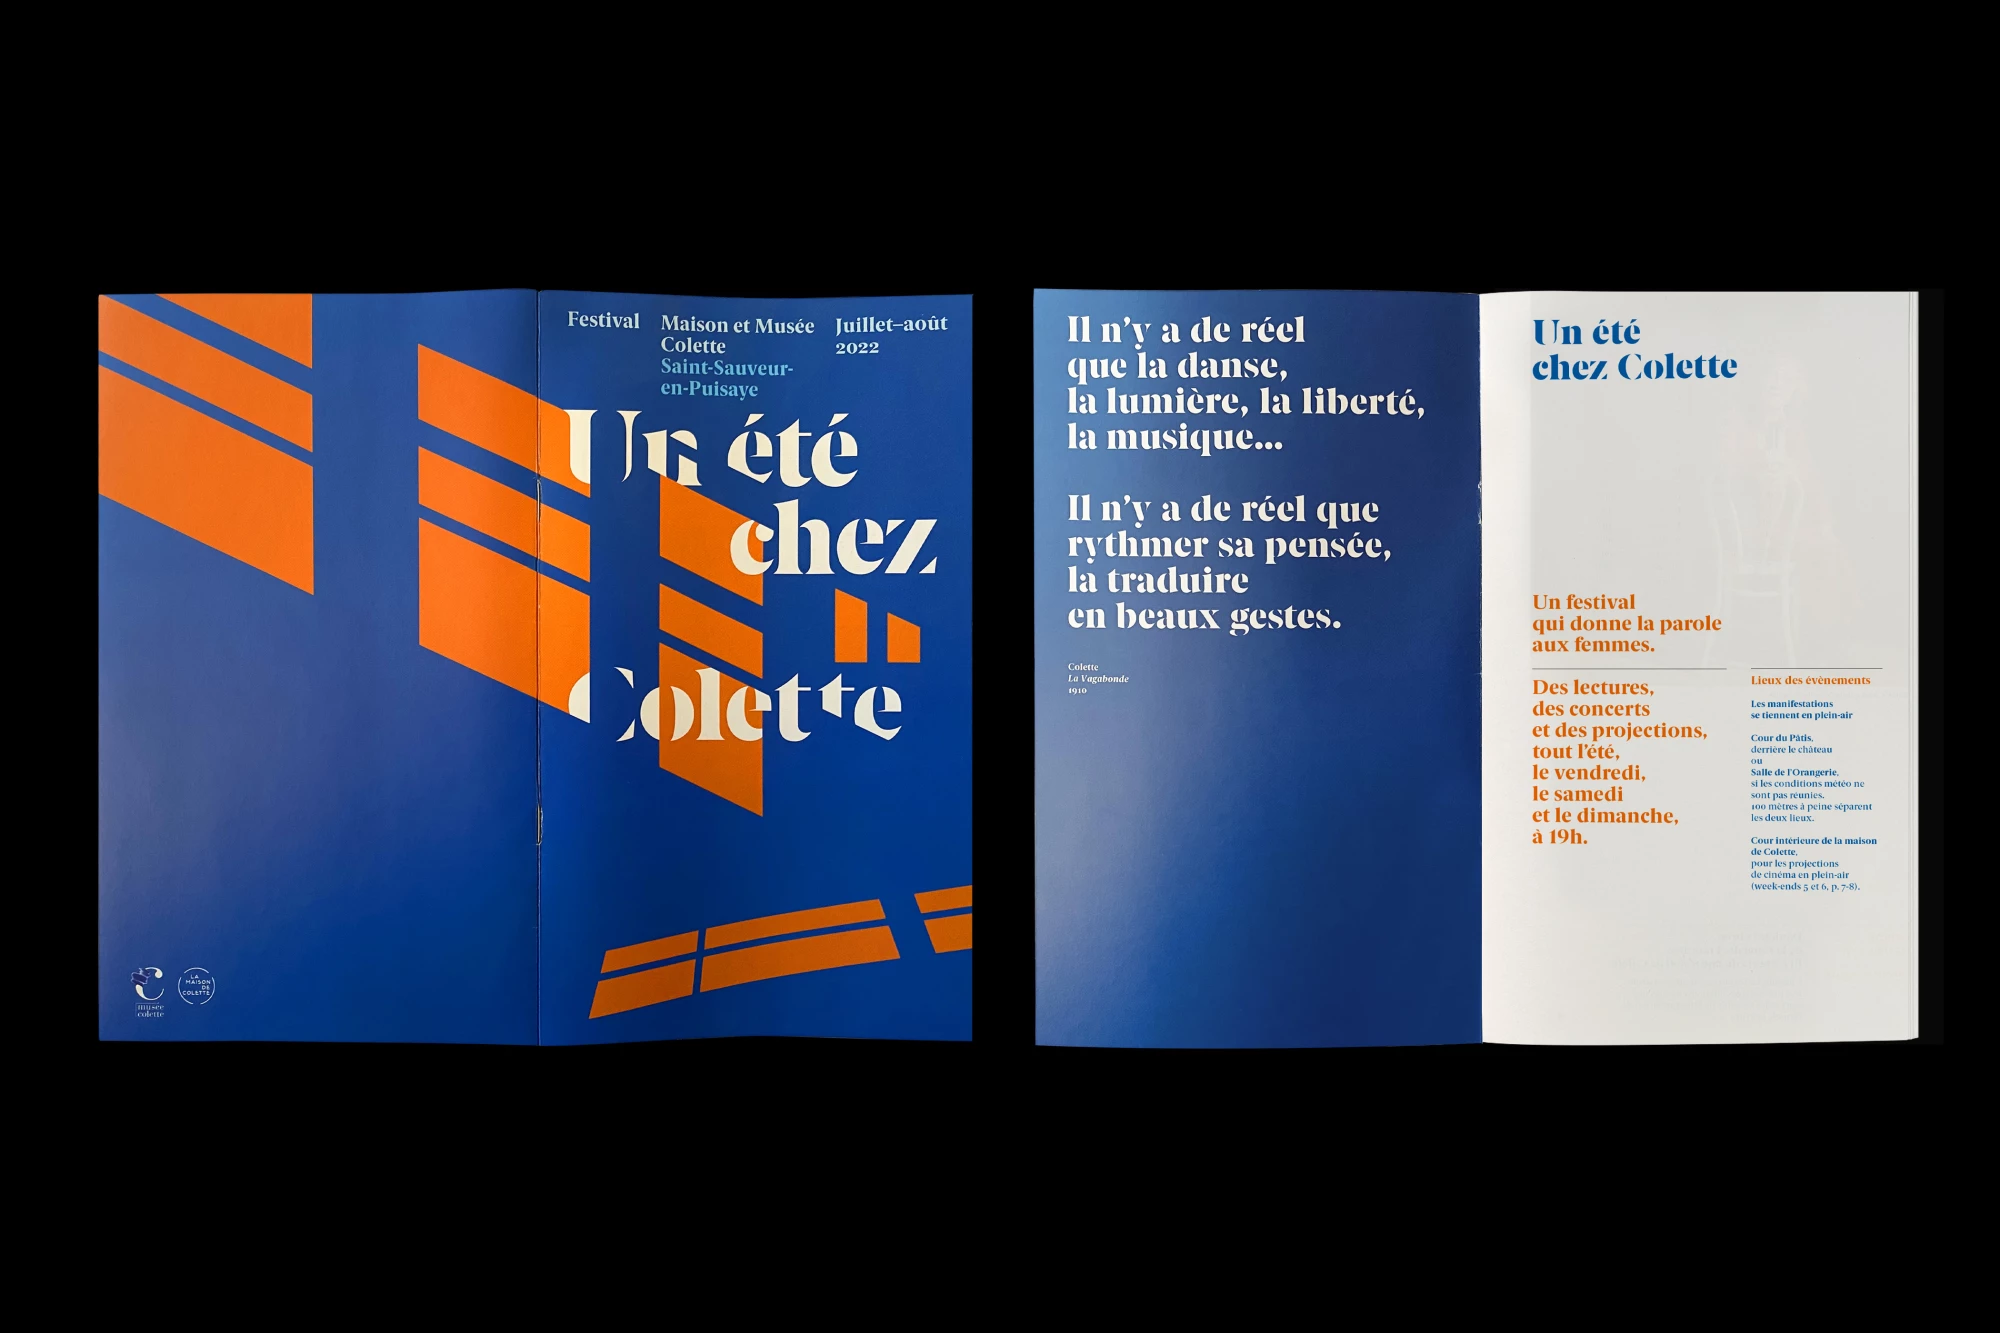 Léo Grunstein - A Summer at Colette’s, 2022, Maison de Colette, Poster, Publication, Branding, 2022